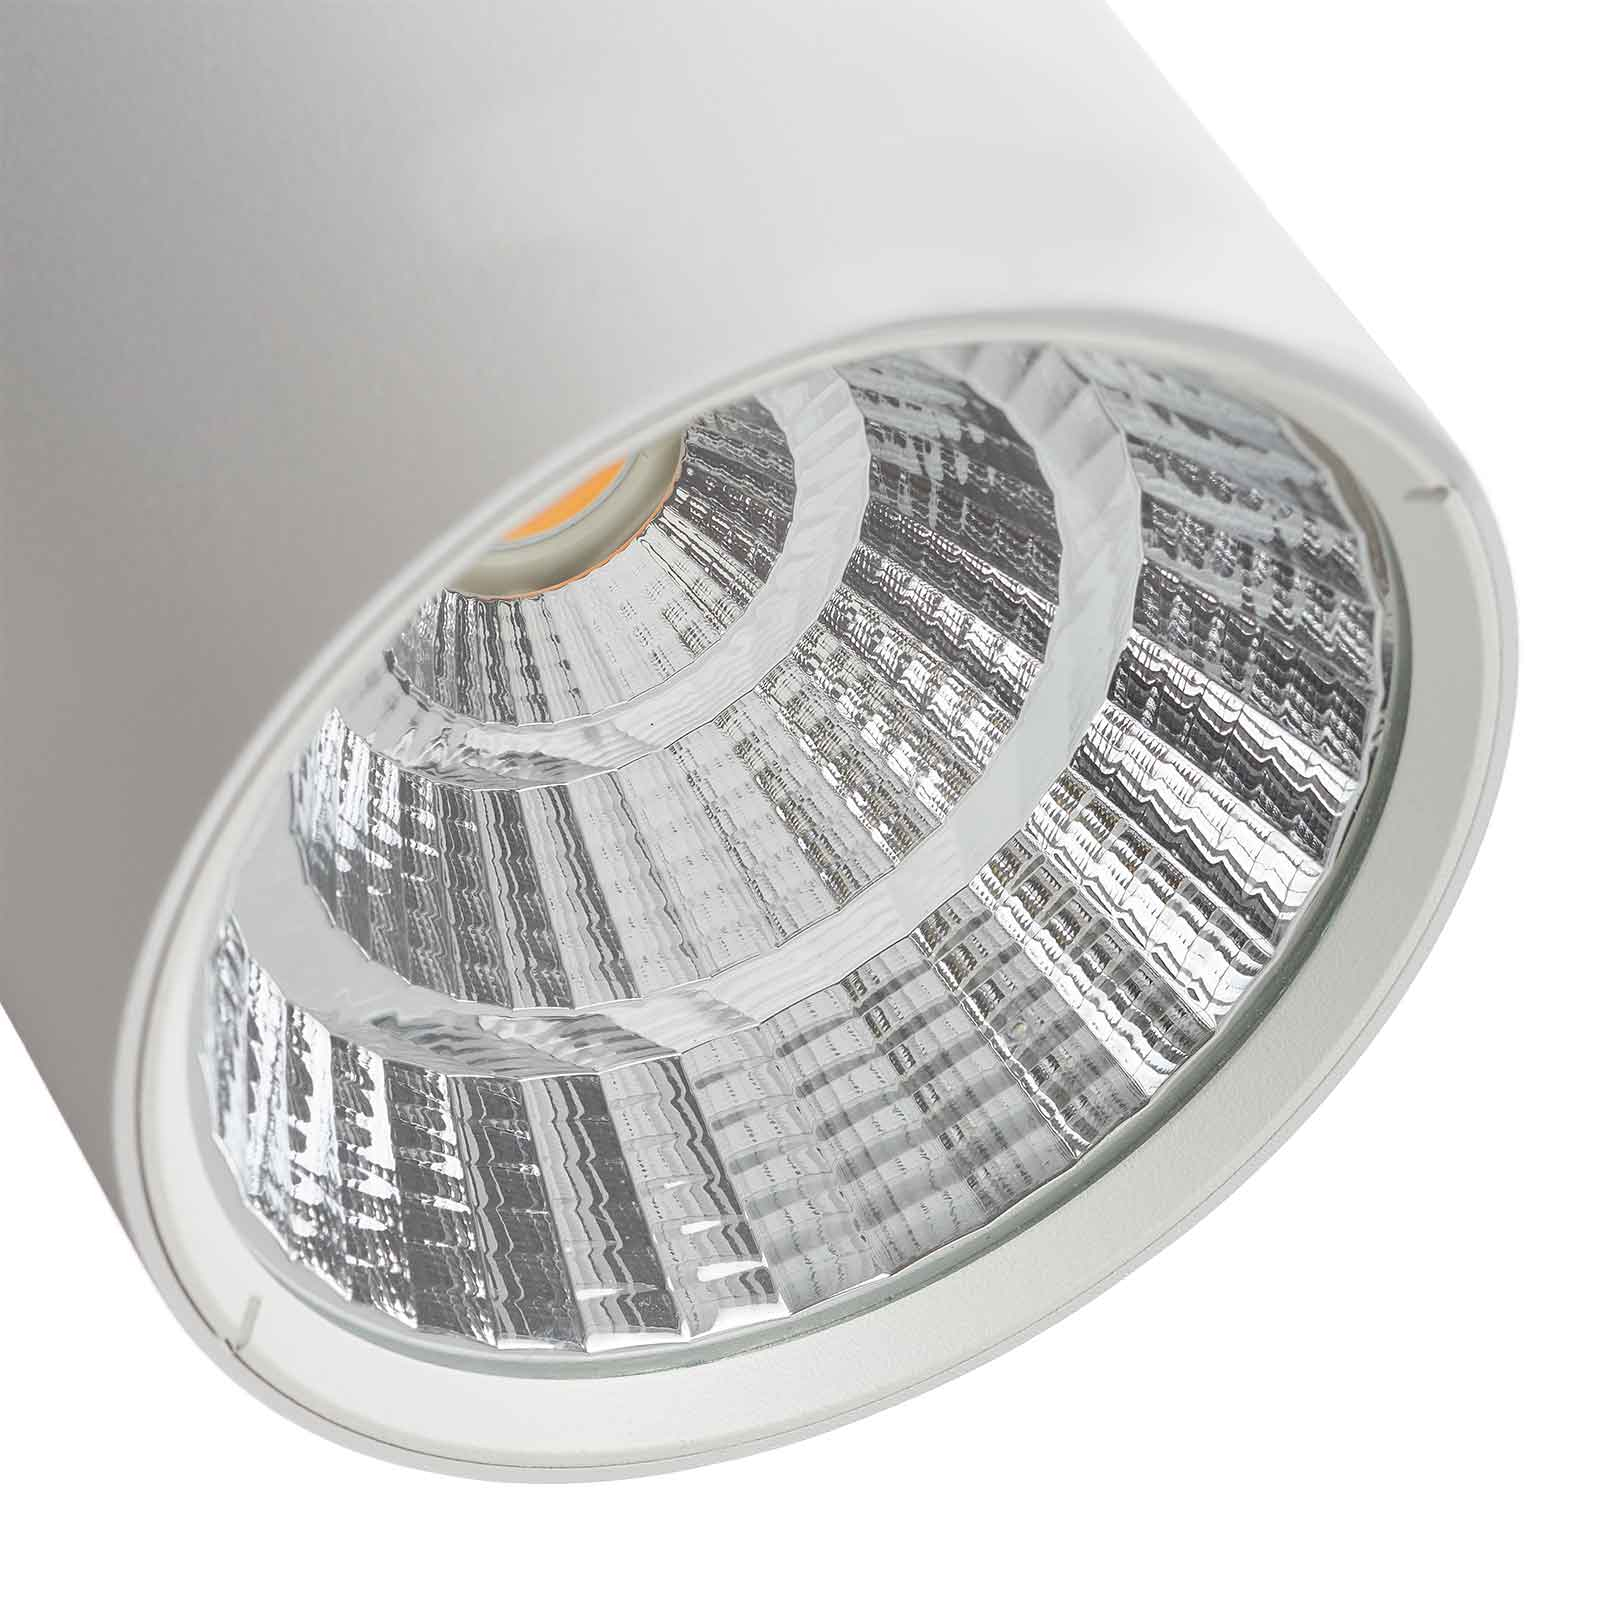 Lucande Takio LED-downlight 2 700 K Ø10cm hvit